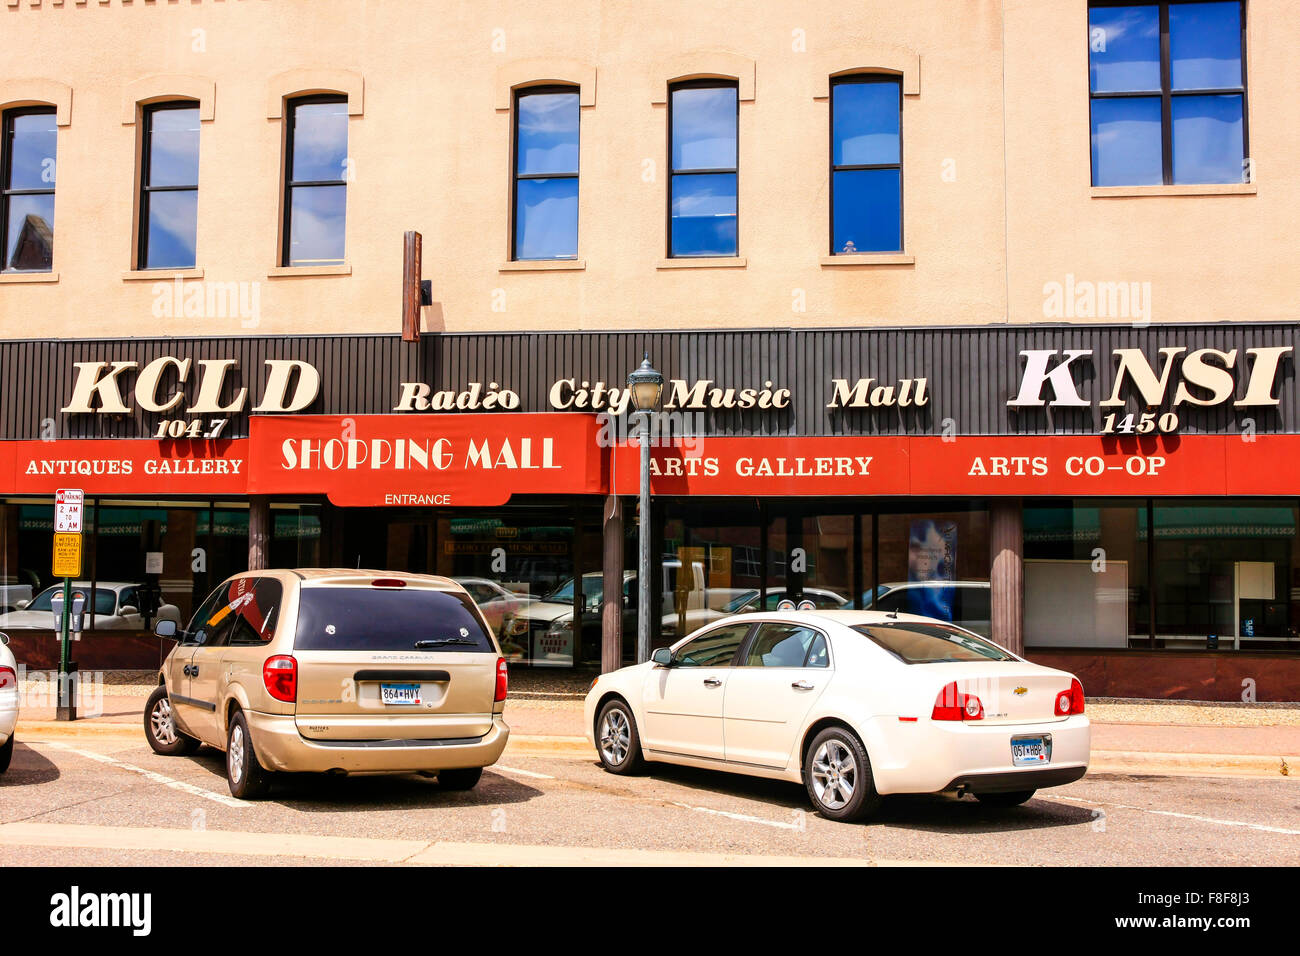 KCLD Radio City Music Hall Shopping Mall auf W. Germain Street im historischen Viertel der Innenstadt von St. Cloud, Minnesota Stockfoto